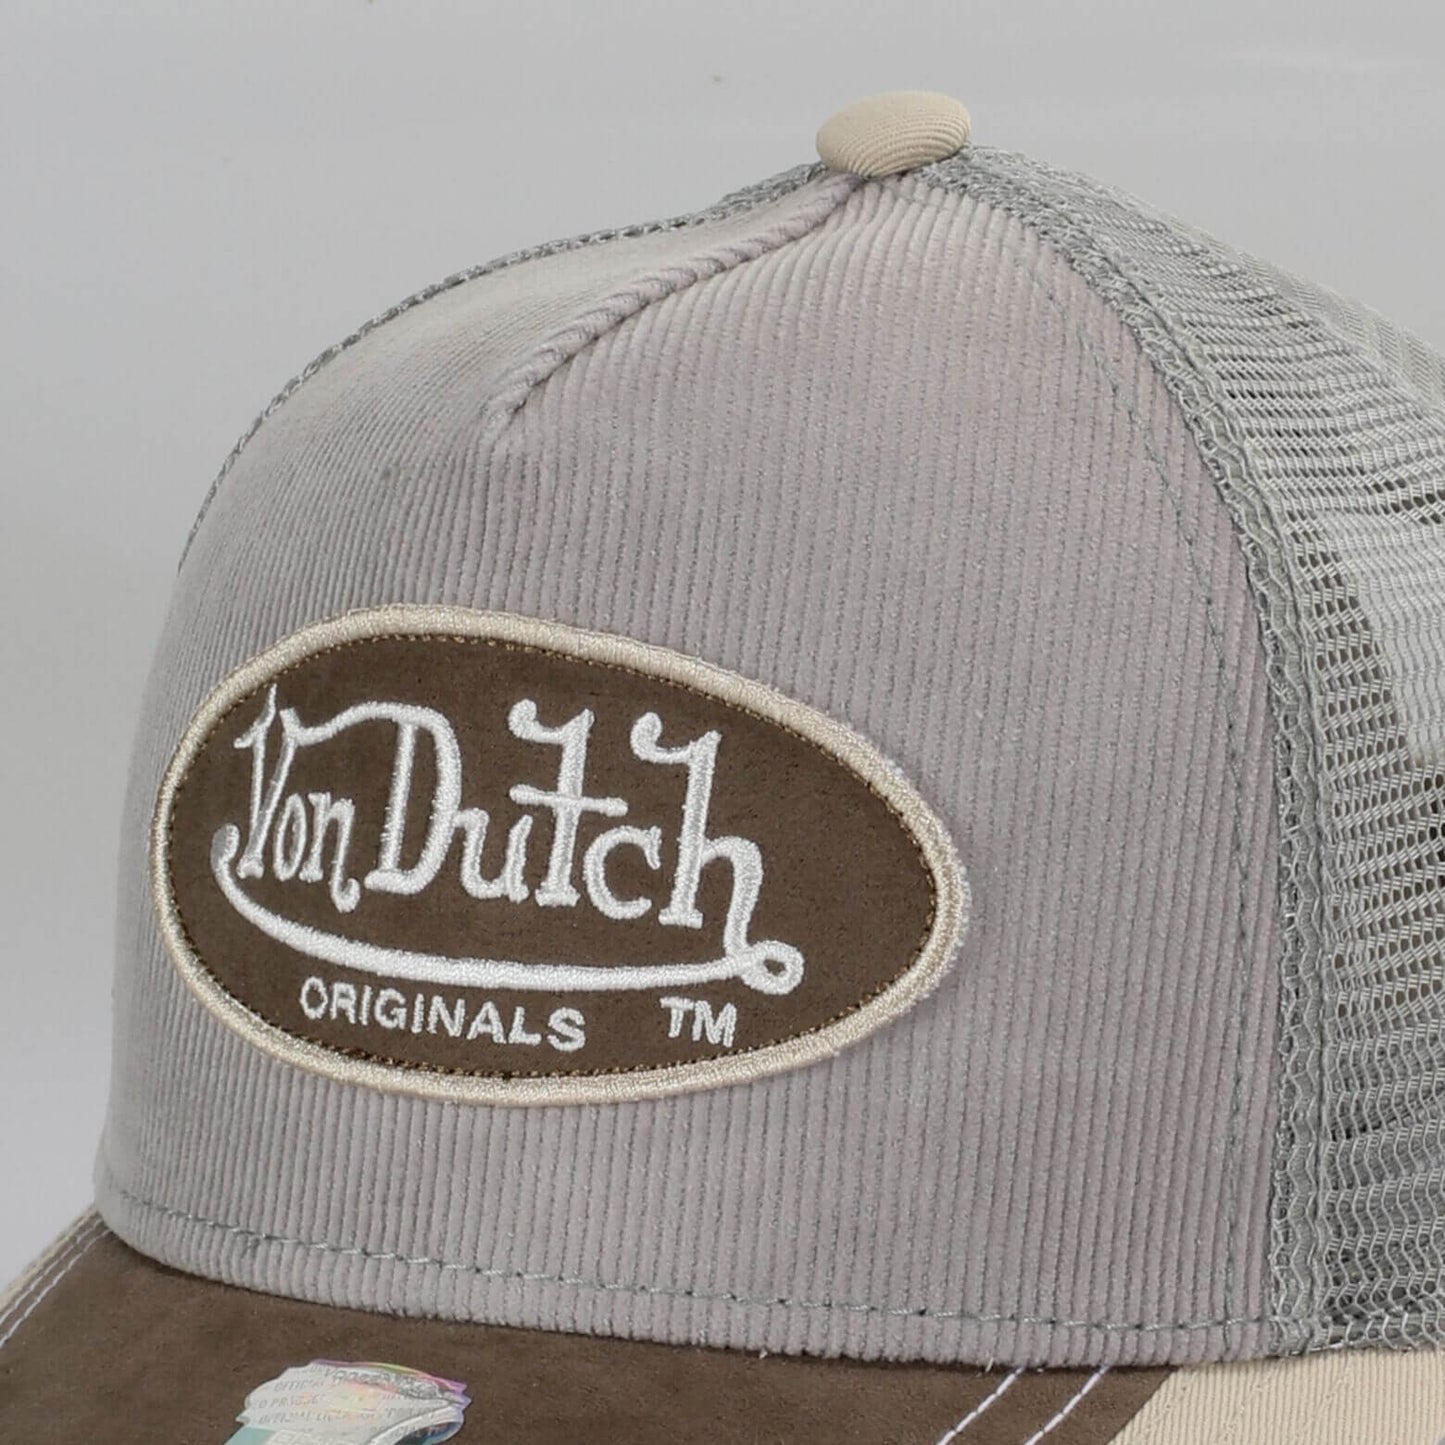 Von Dutch Originals Trucker Ottawa Oval Patch Cord/Imi Suede Grey/Grey